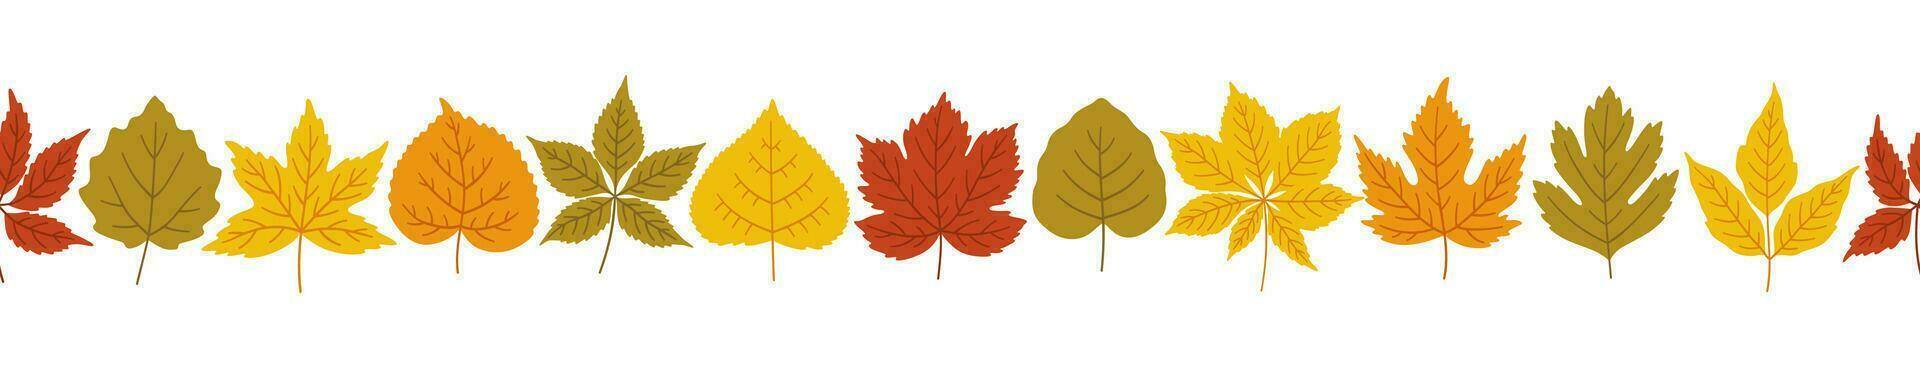 outono folhas fundo, bandeira modelo, vetor ilustração.